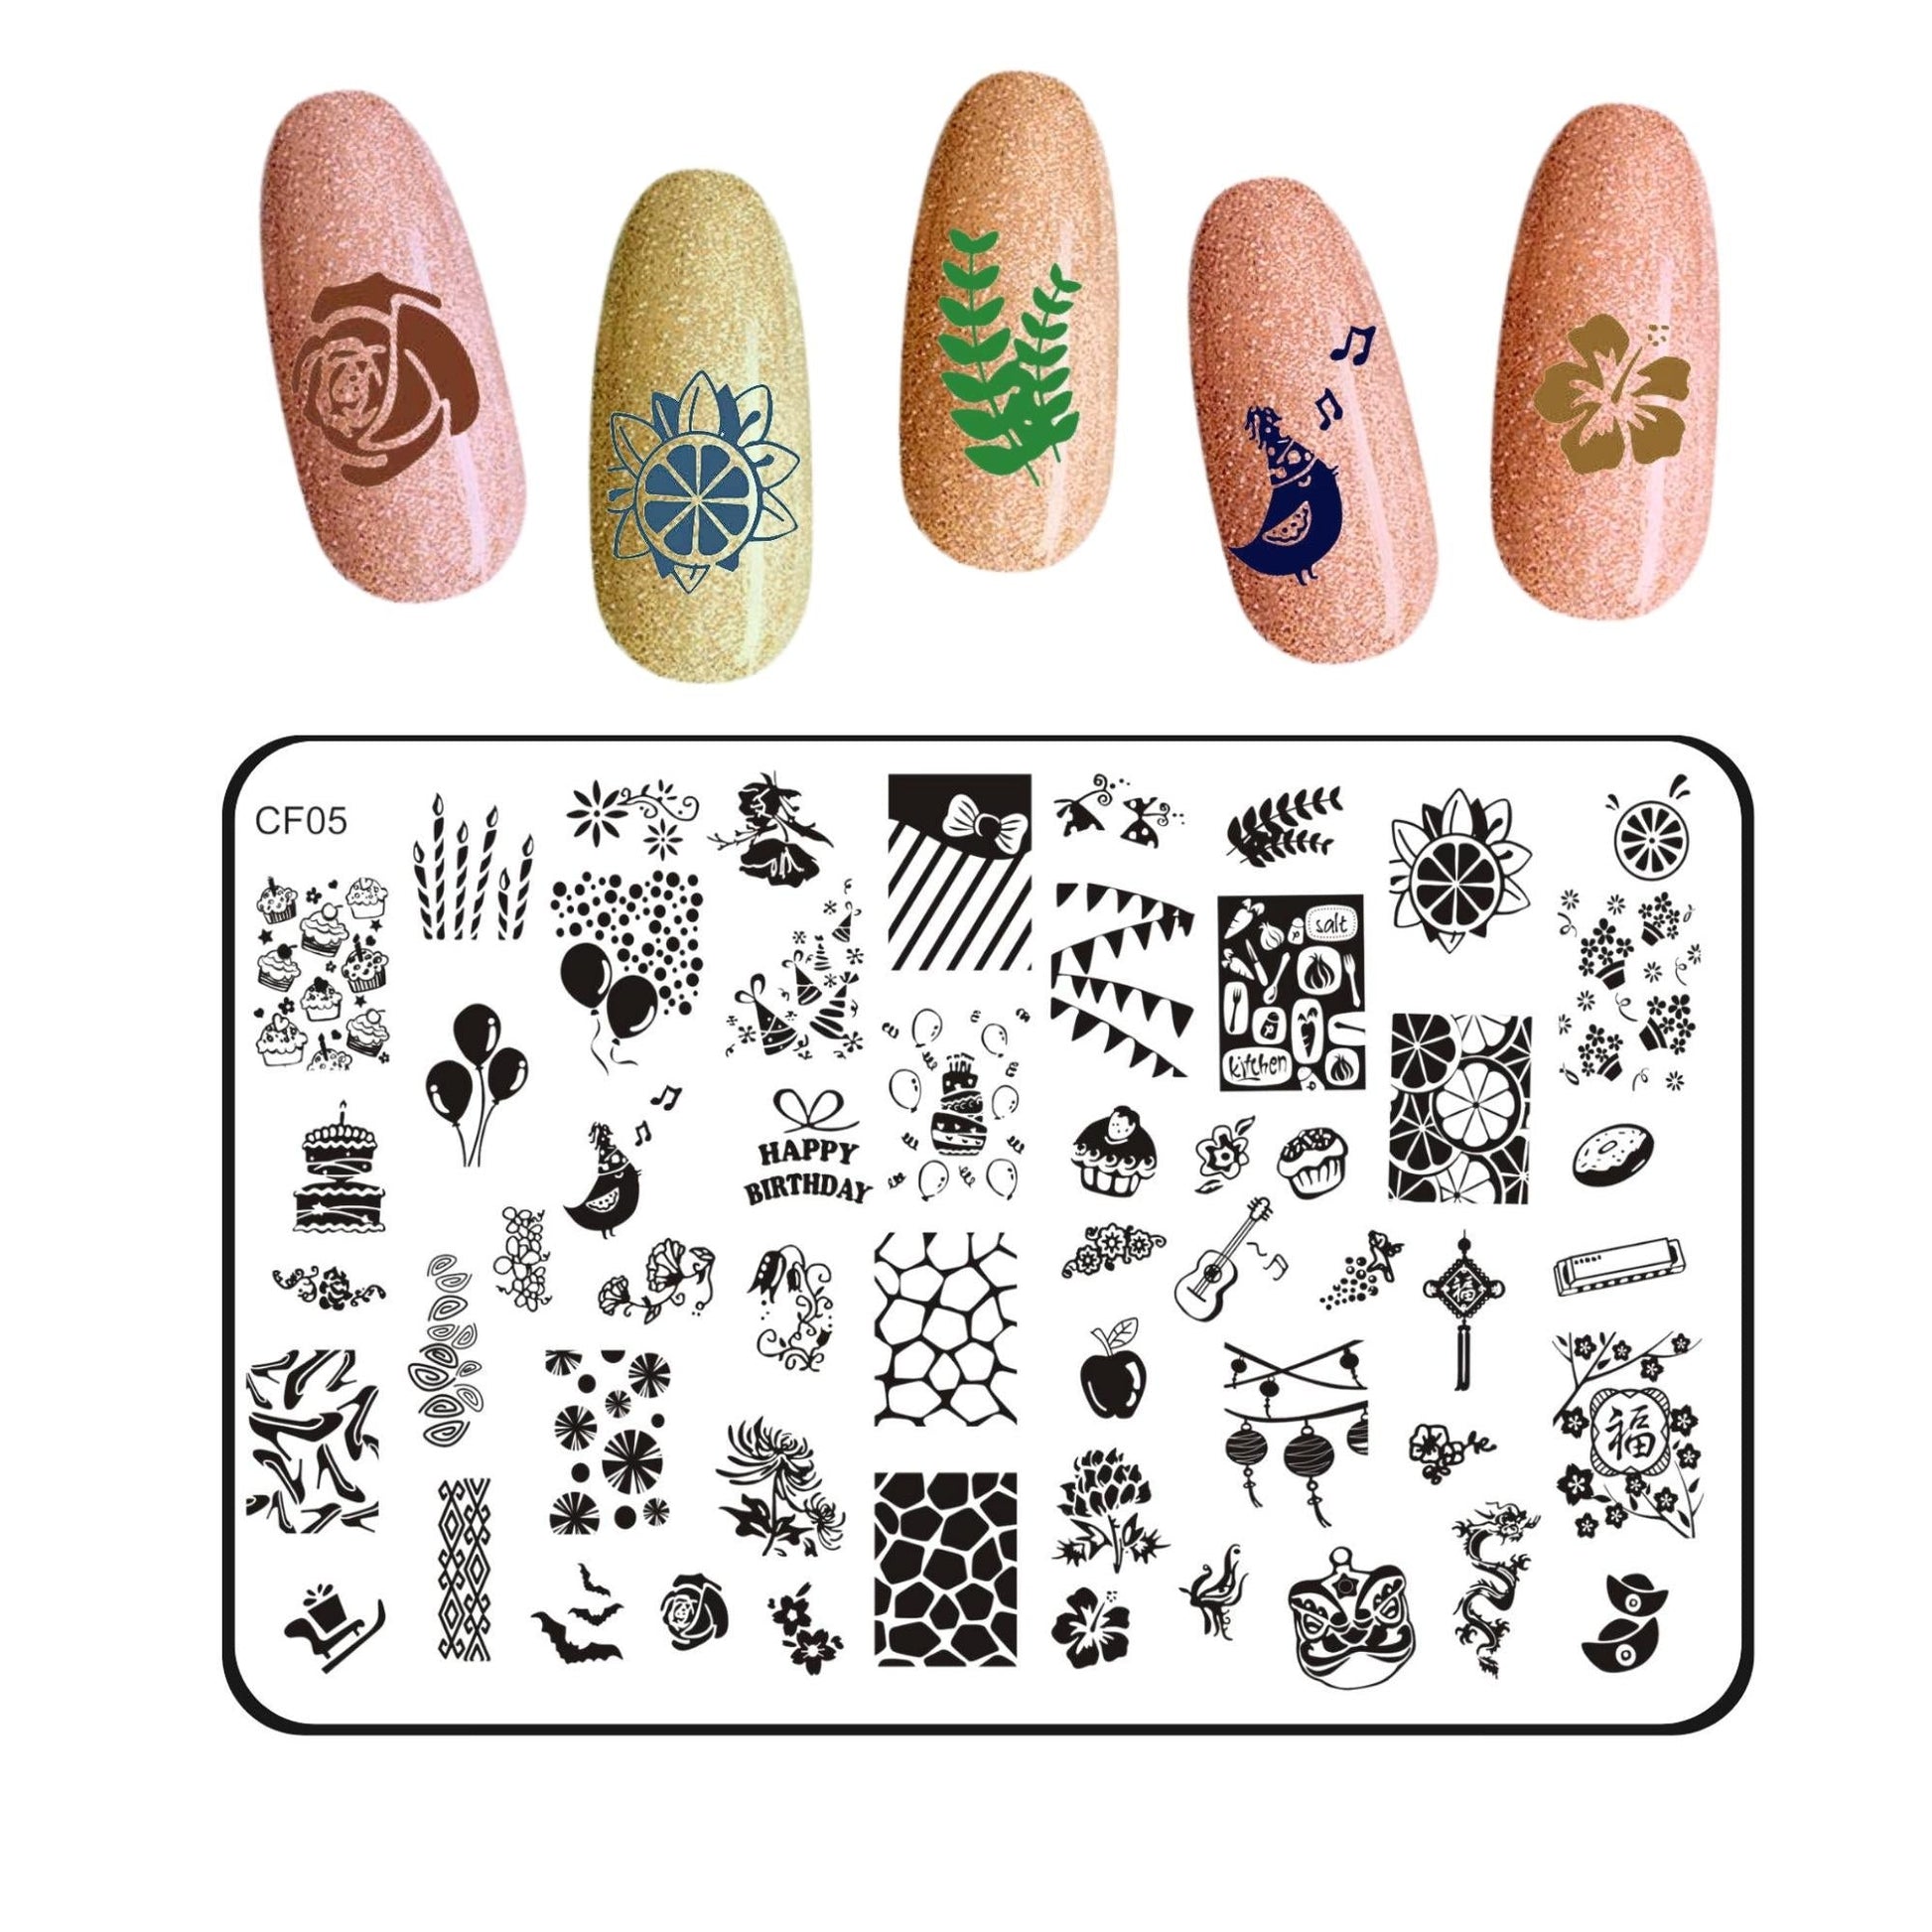 Nail art Stamping Kit- CF05 Nail Art Combo- Royalkart - The Urban Store